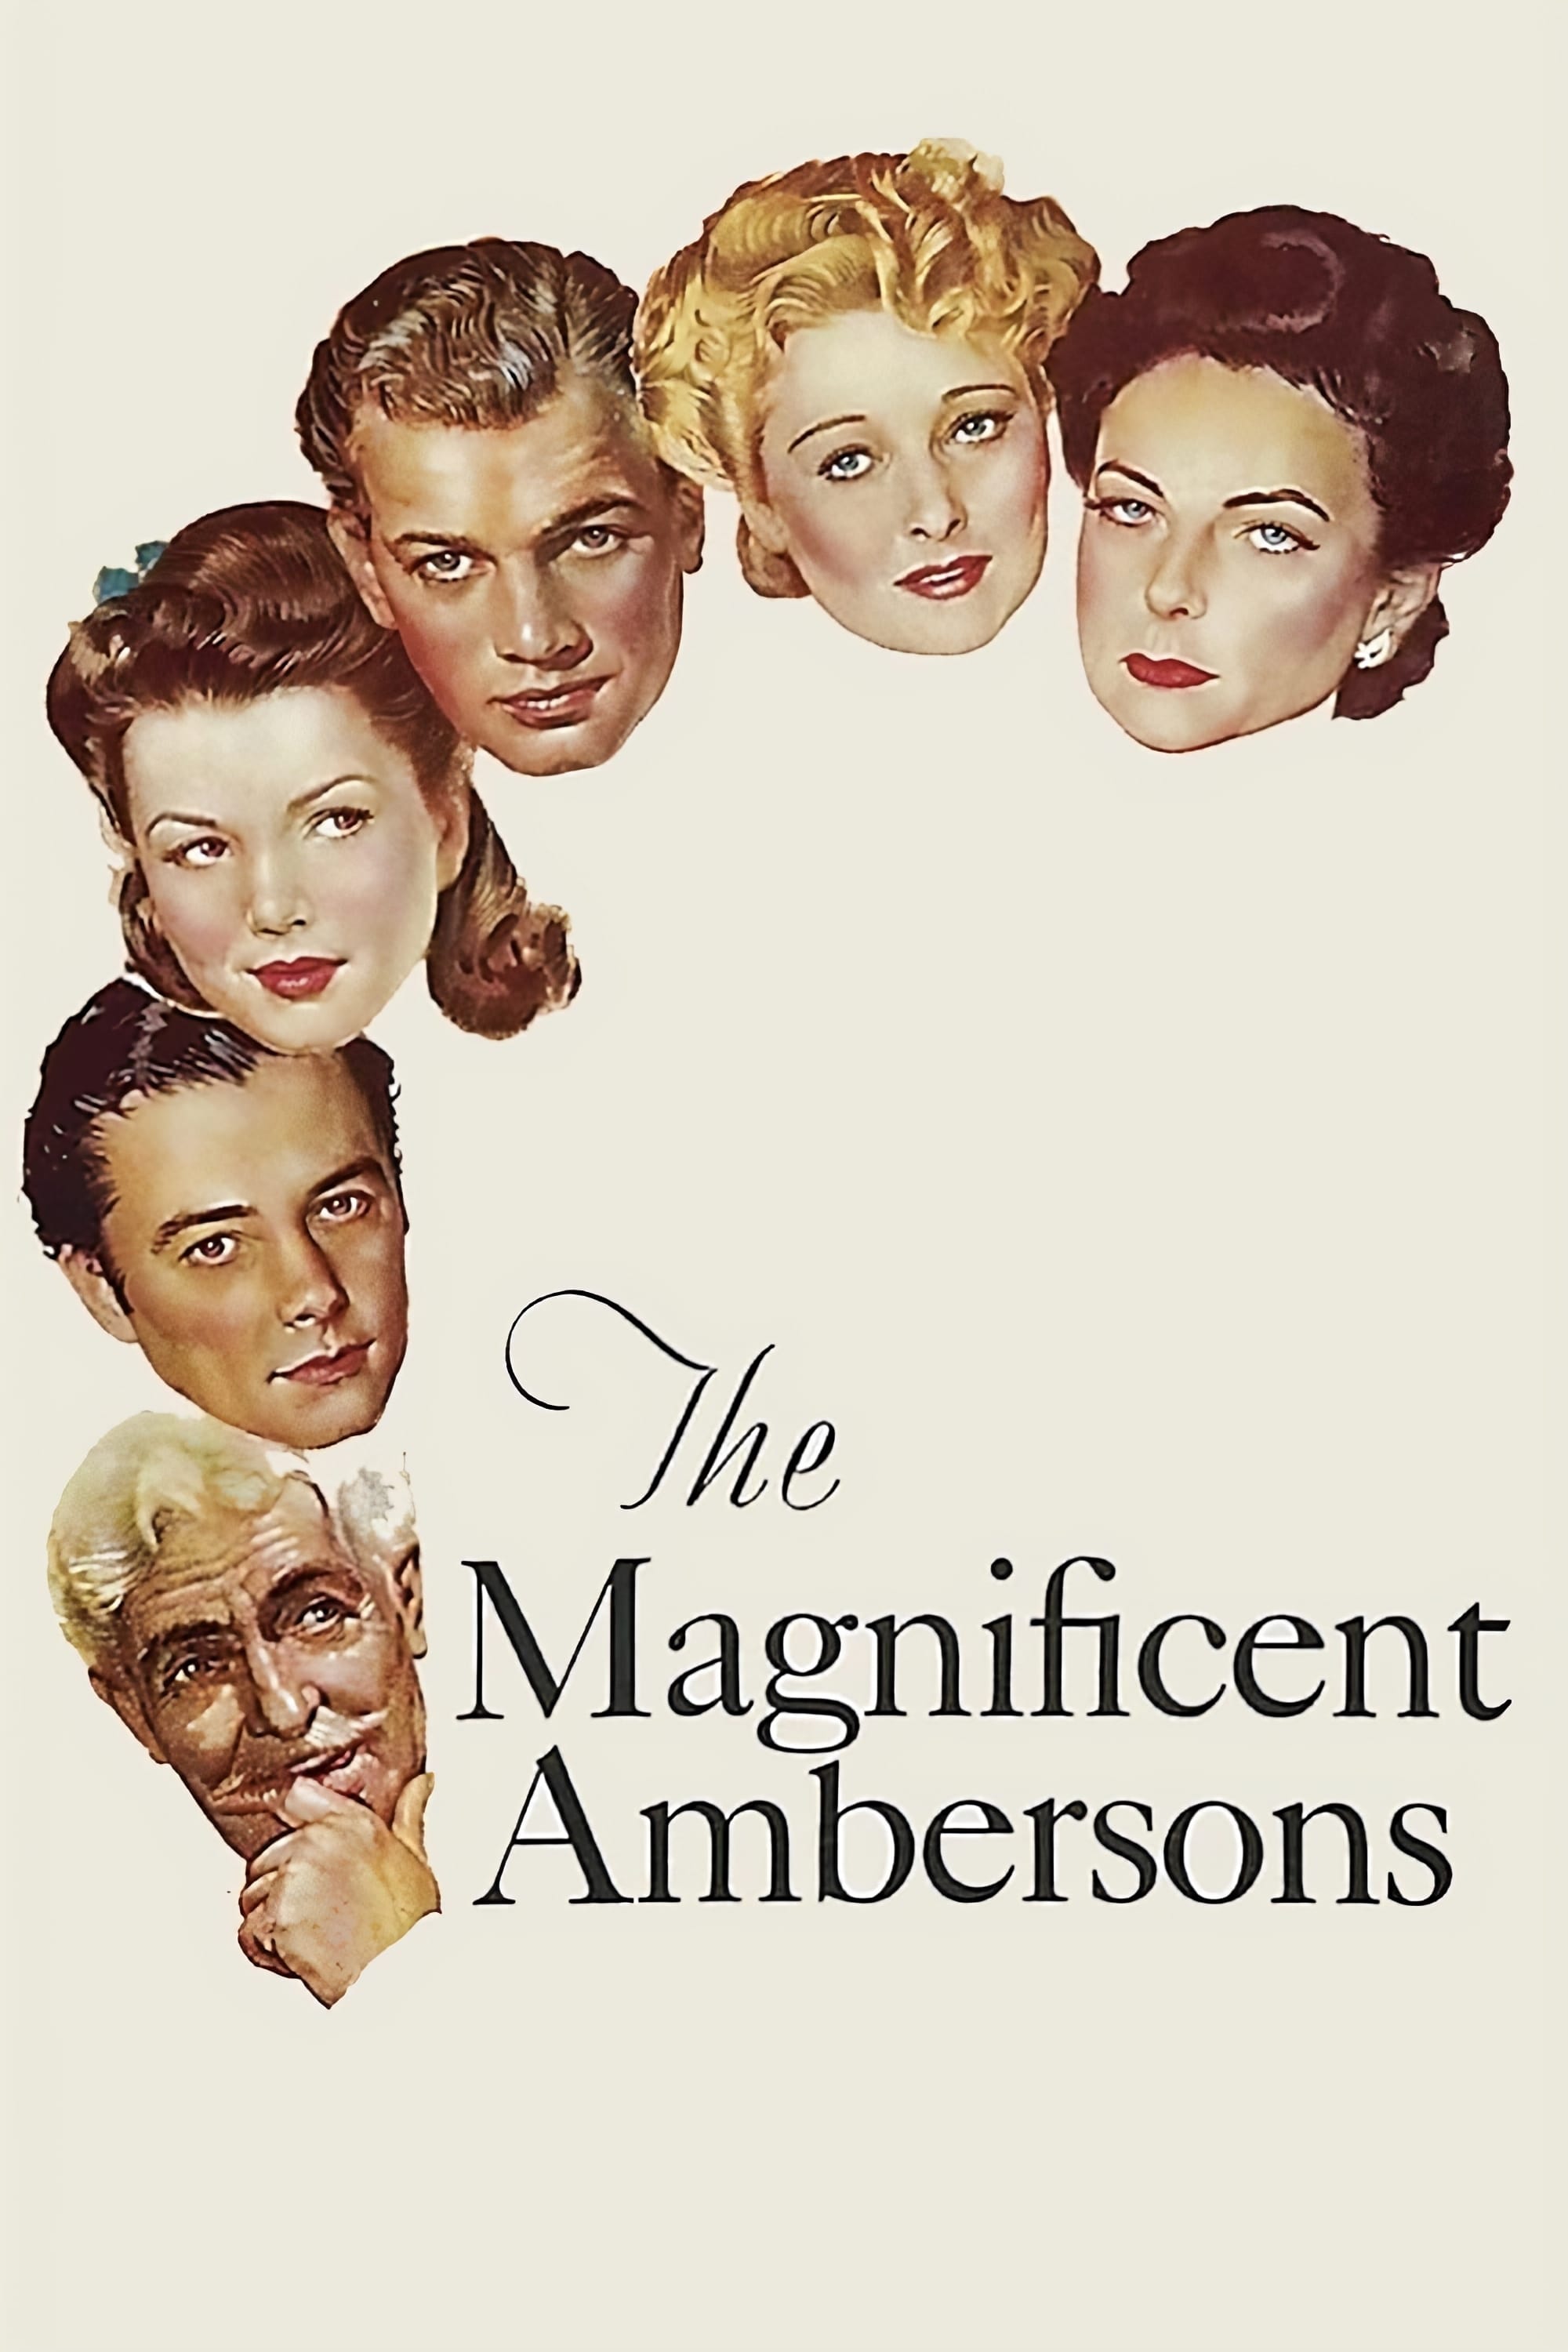 The Magnificent Ambersons - The Magnificent Ambersons